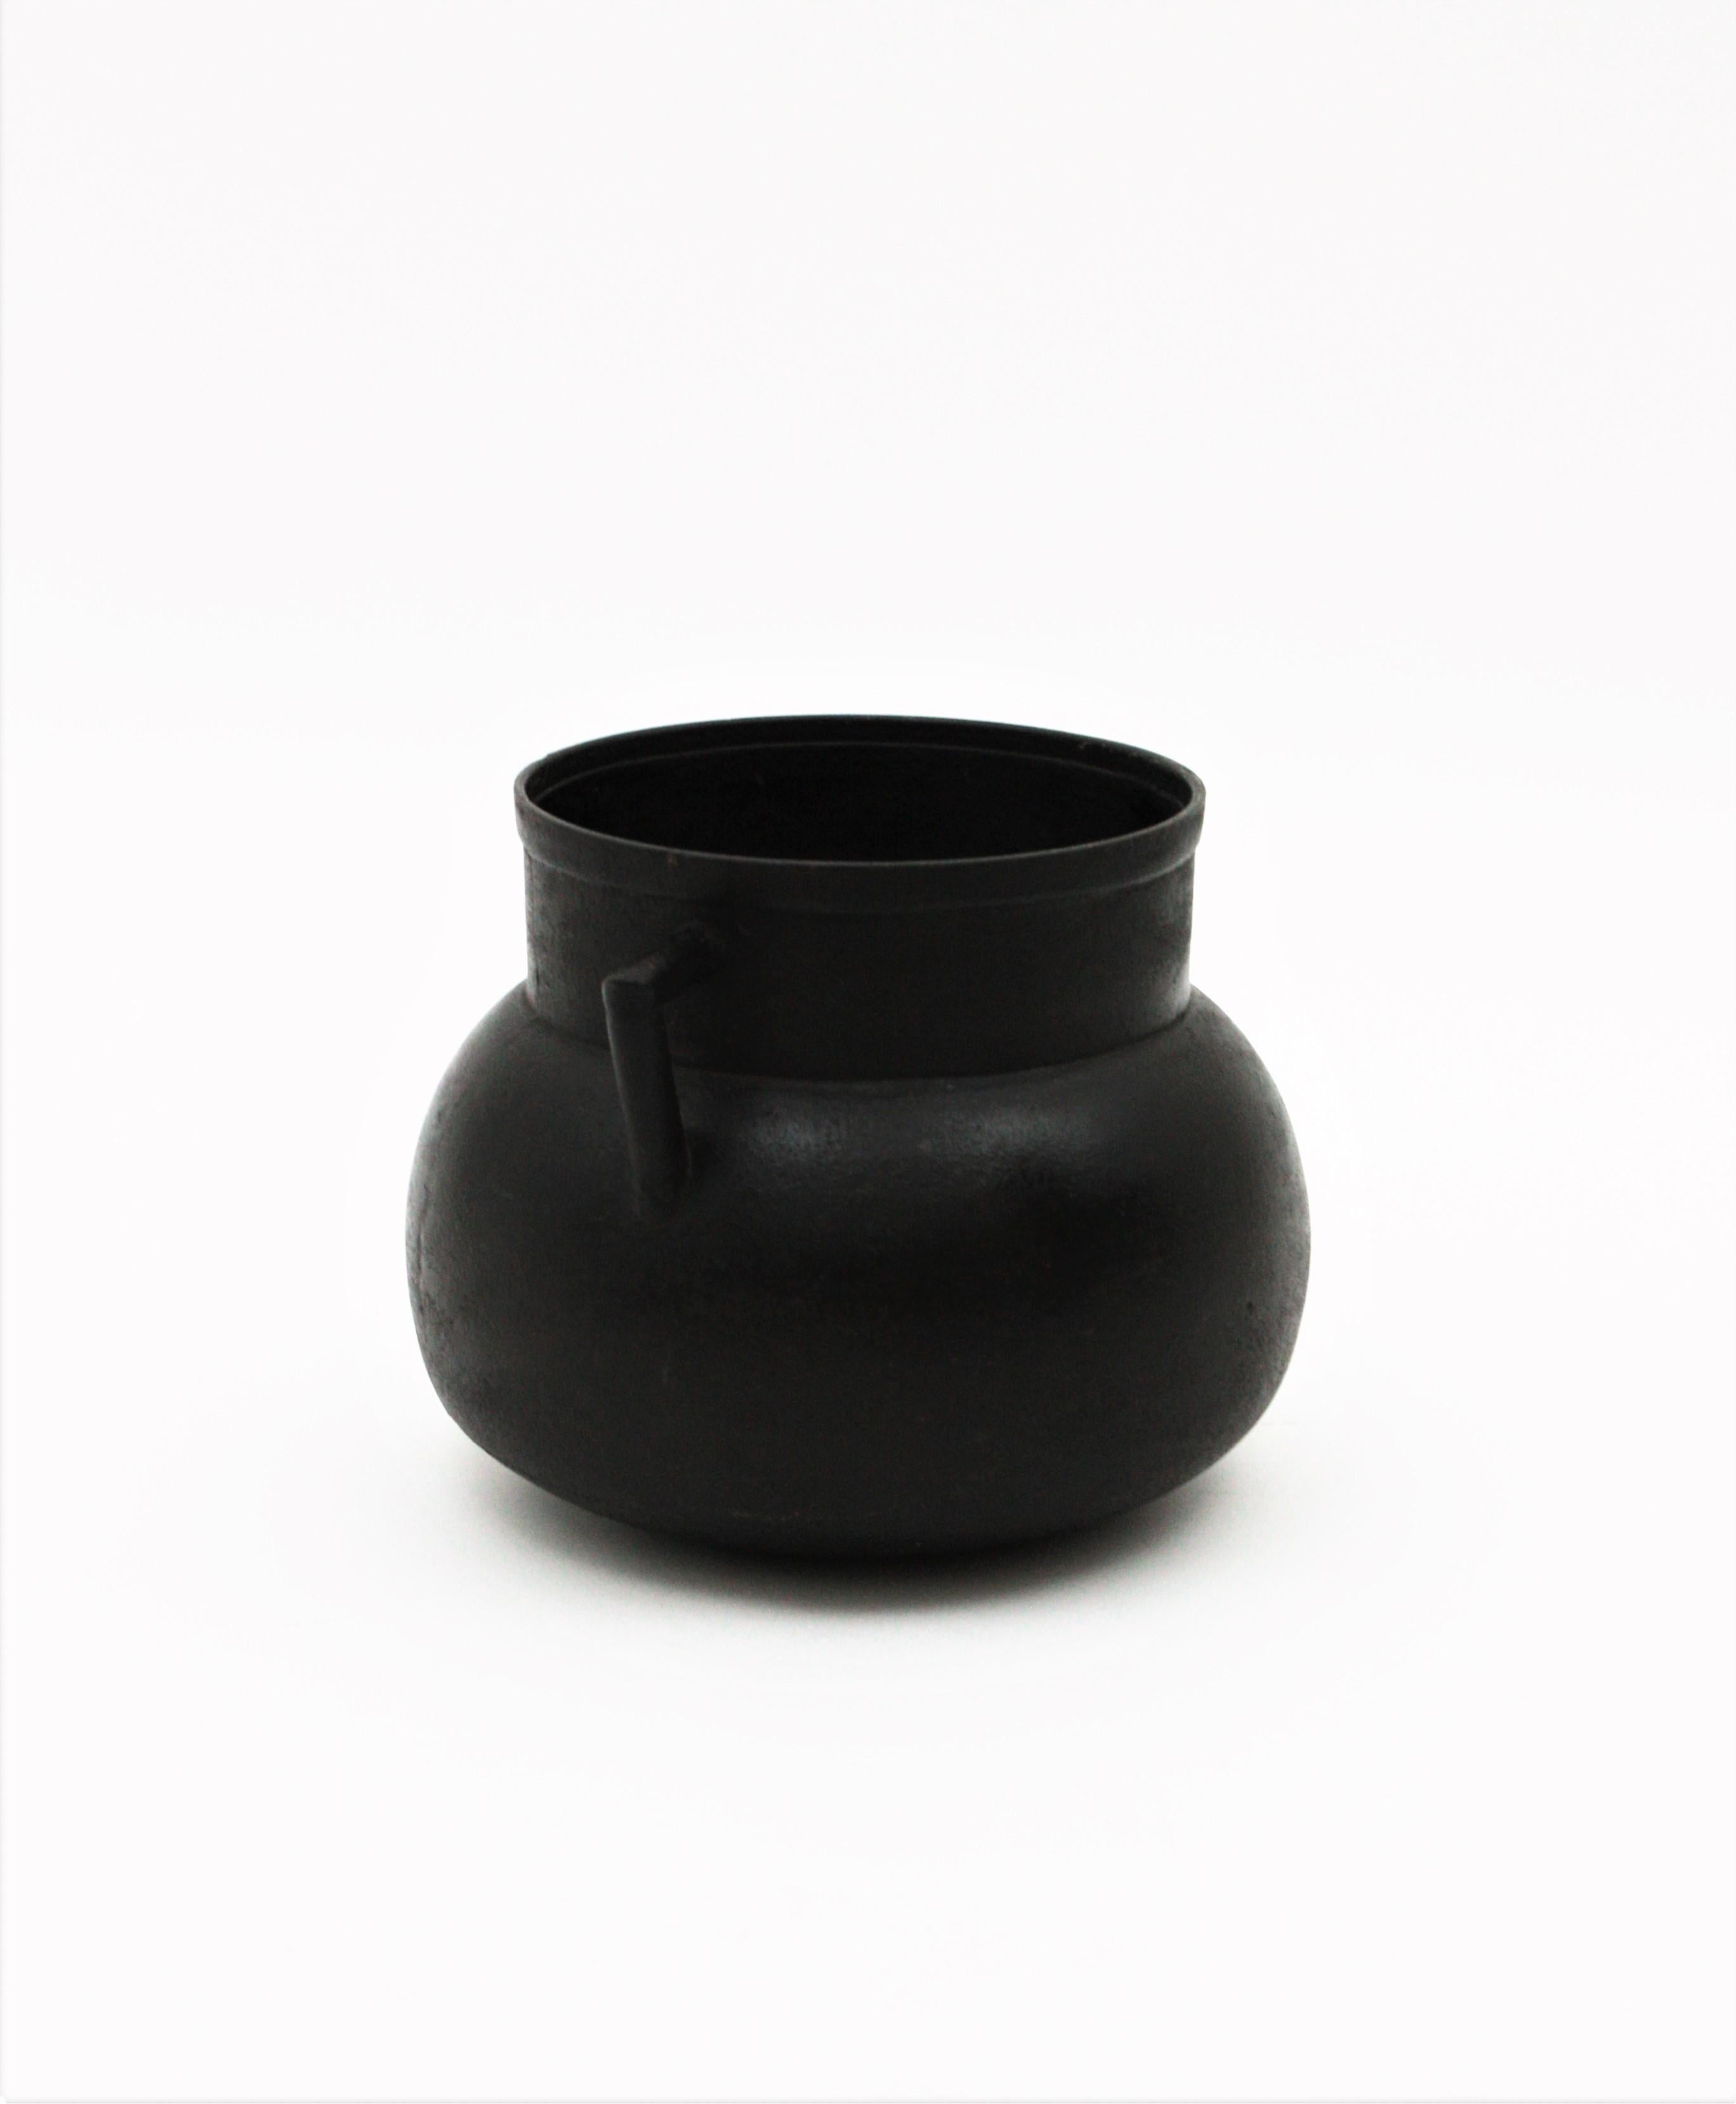 Spanish Cast Iron Cauldron Pot or Vessel For Sale 2